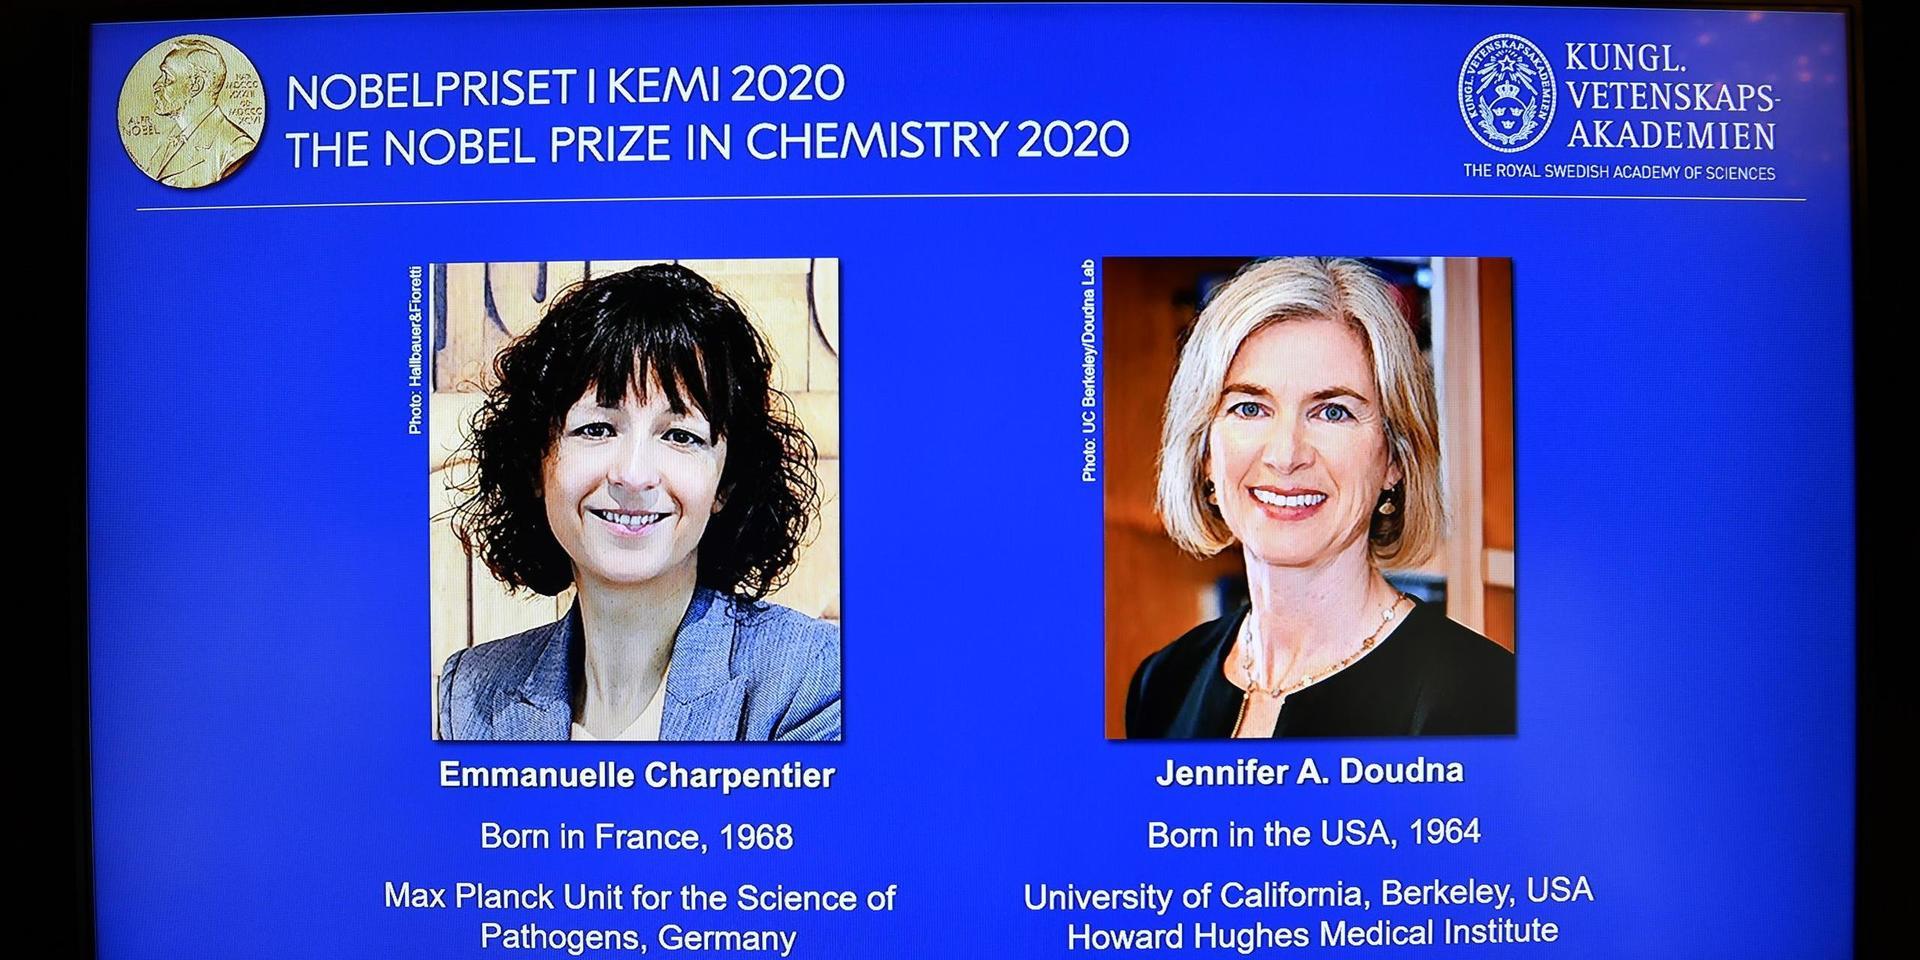 Emmanuelle Charpentier och Jennifer A Doudna tilldelas 2020 års Nobelpris i kemi.